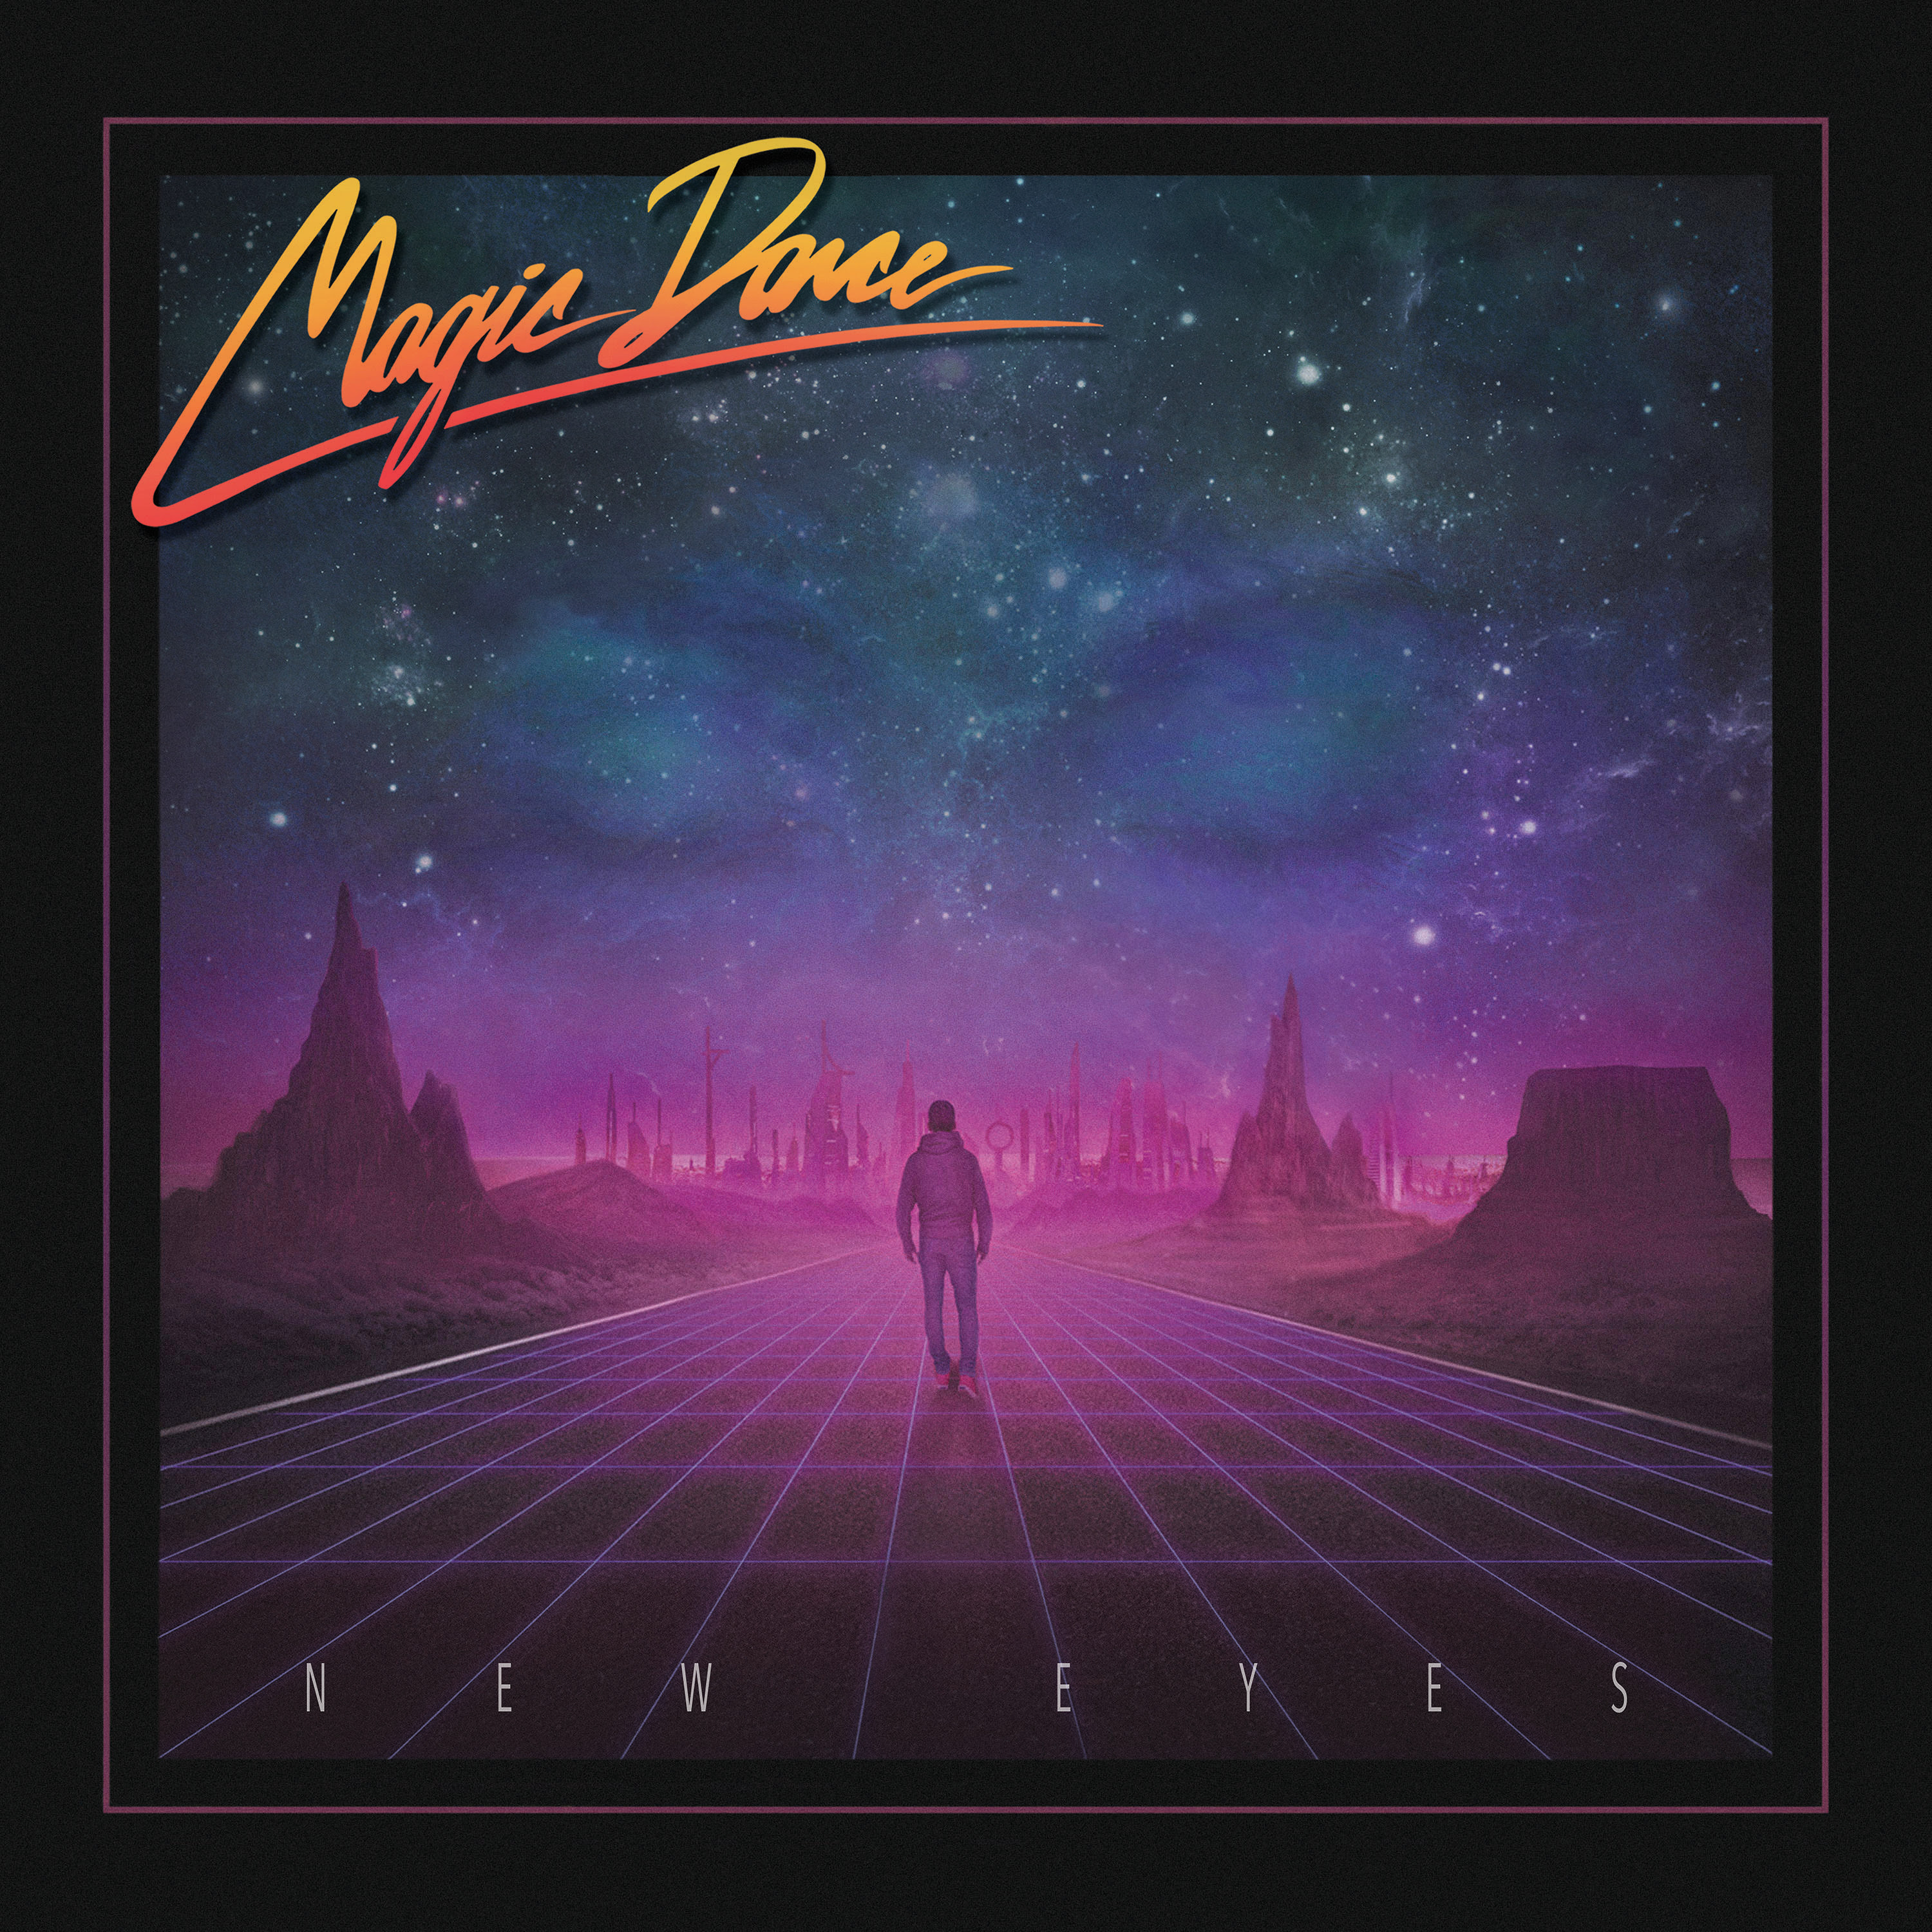 Magic альбомы. Magic Dance - New Eyes - 2018. Magic Dance группа. Magic Dance - Remnants. Magic Dance обложка.